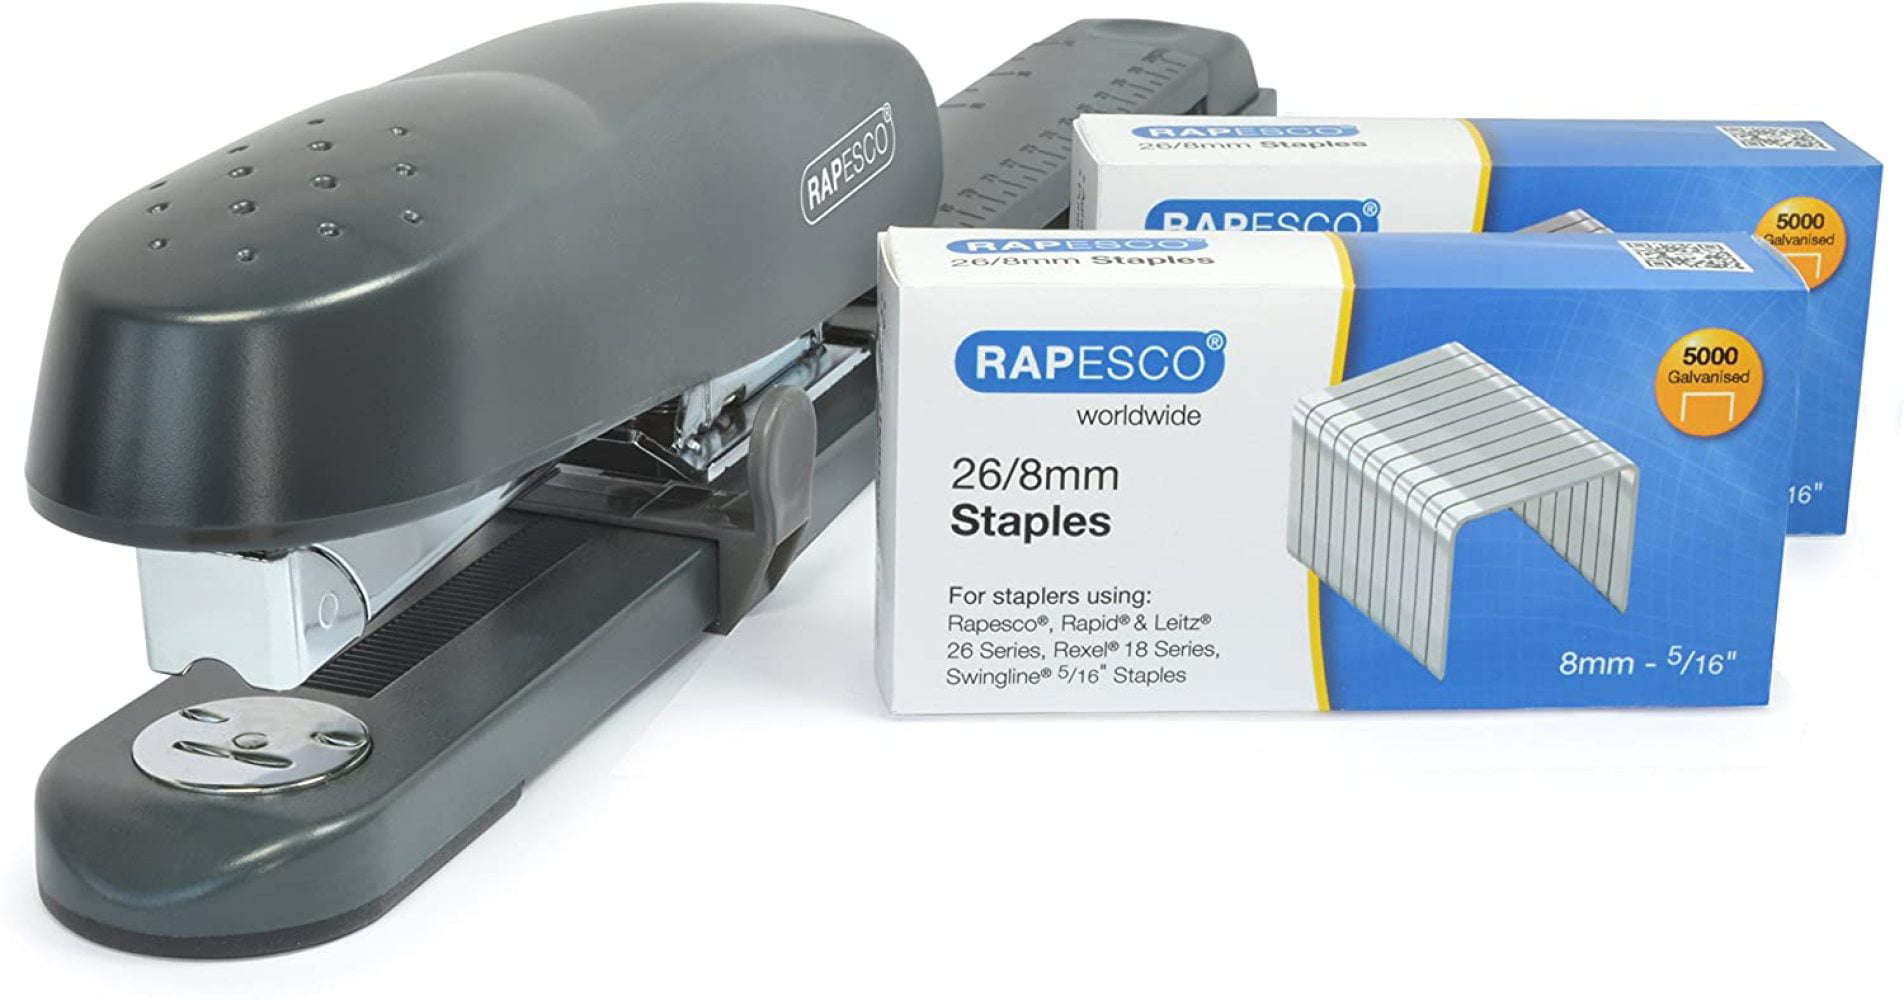 1298 Metal Rapesco Stapling Set Porpoise Packaging Stapler & 2 Boxes of 5000 x 26/8mm Staples 